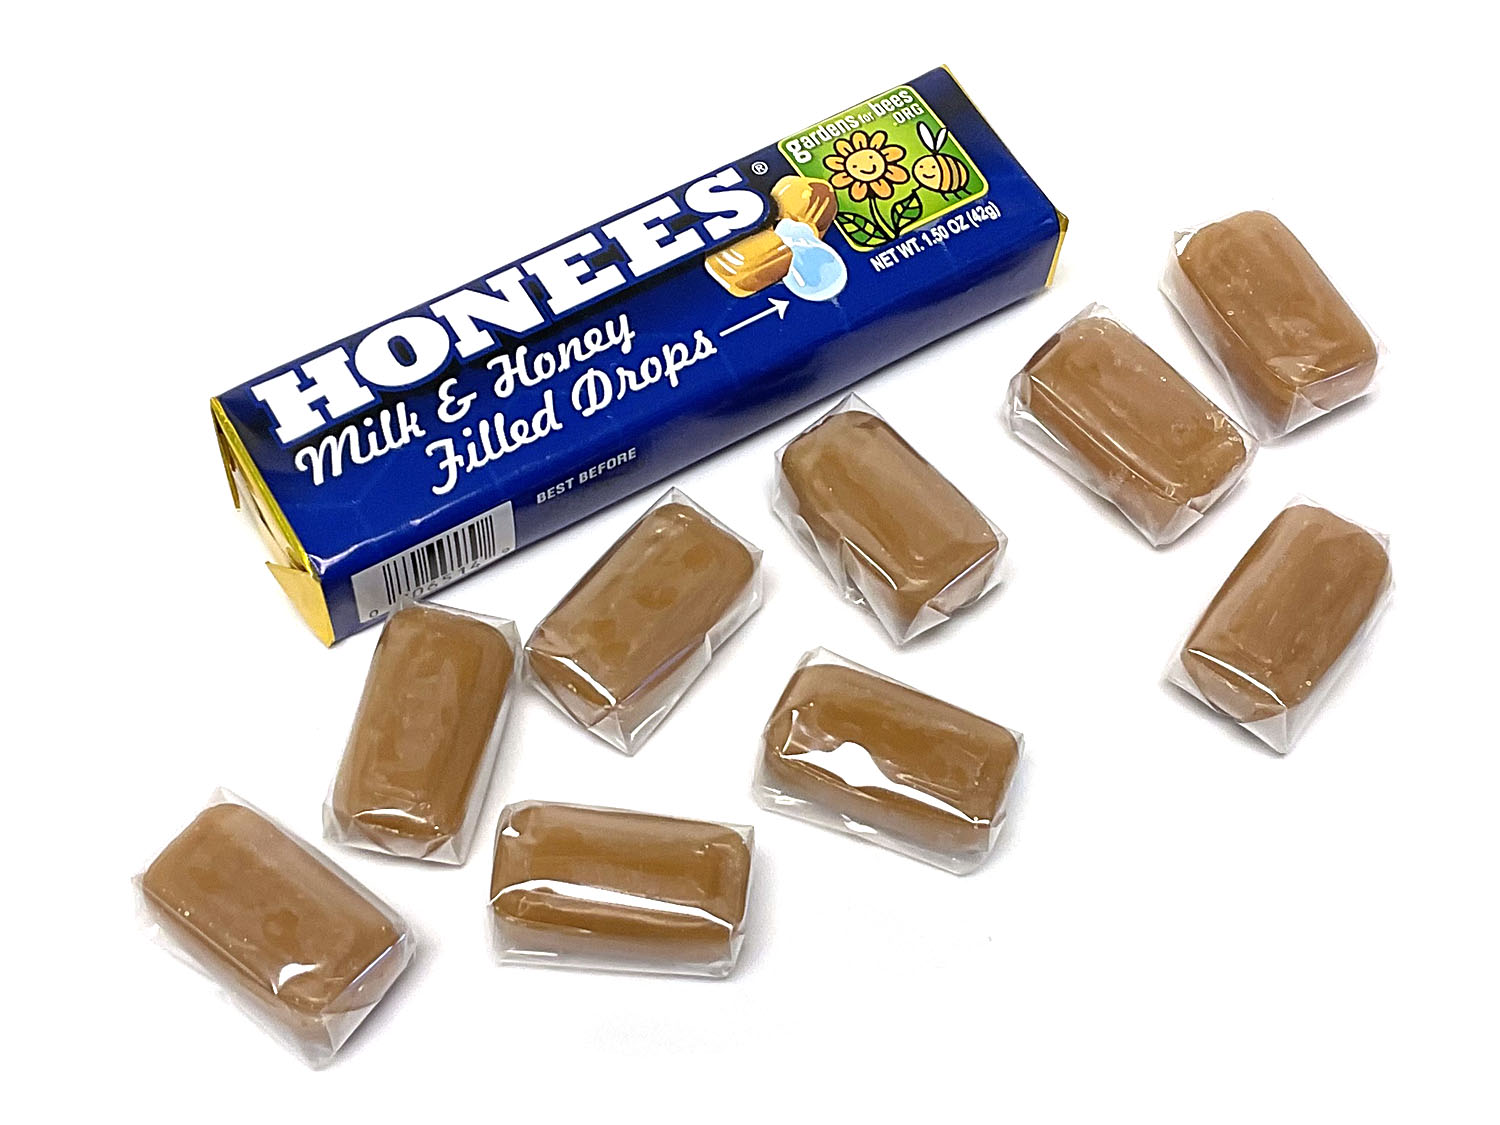 Honees Milk & Honey Drops - 1.5 oz pkg